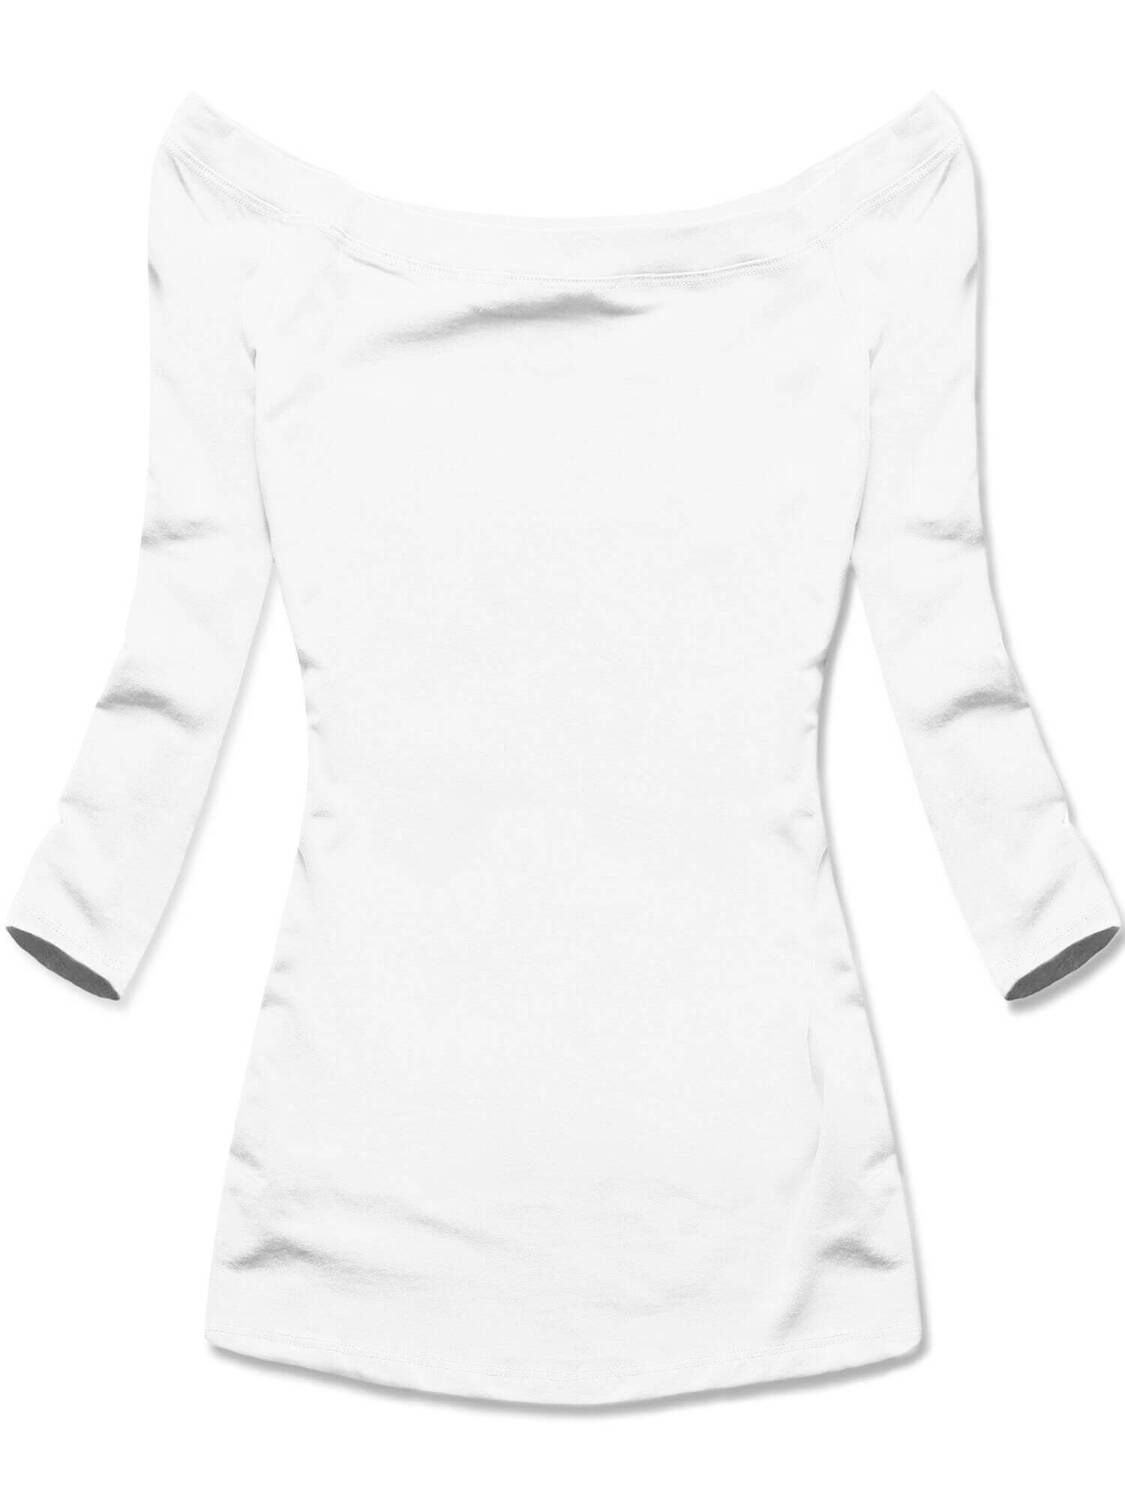 Biała klasyczna bluzka z dekoltem w łódkę, elegancka i elastyczna